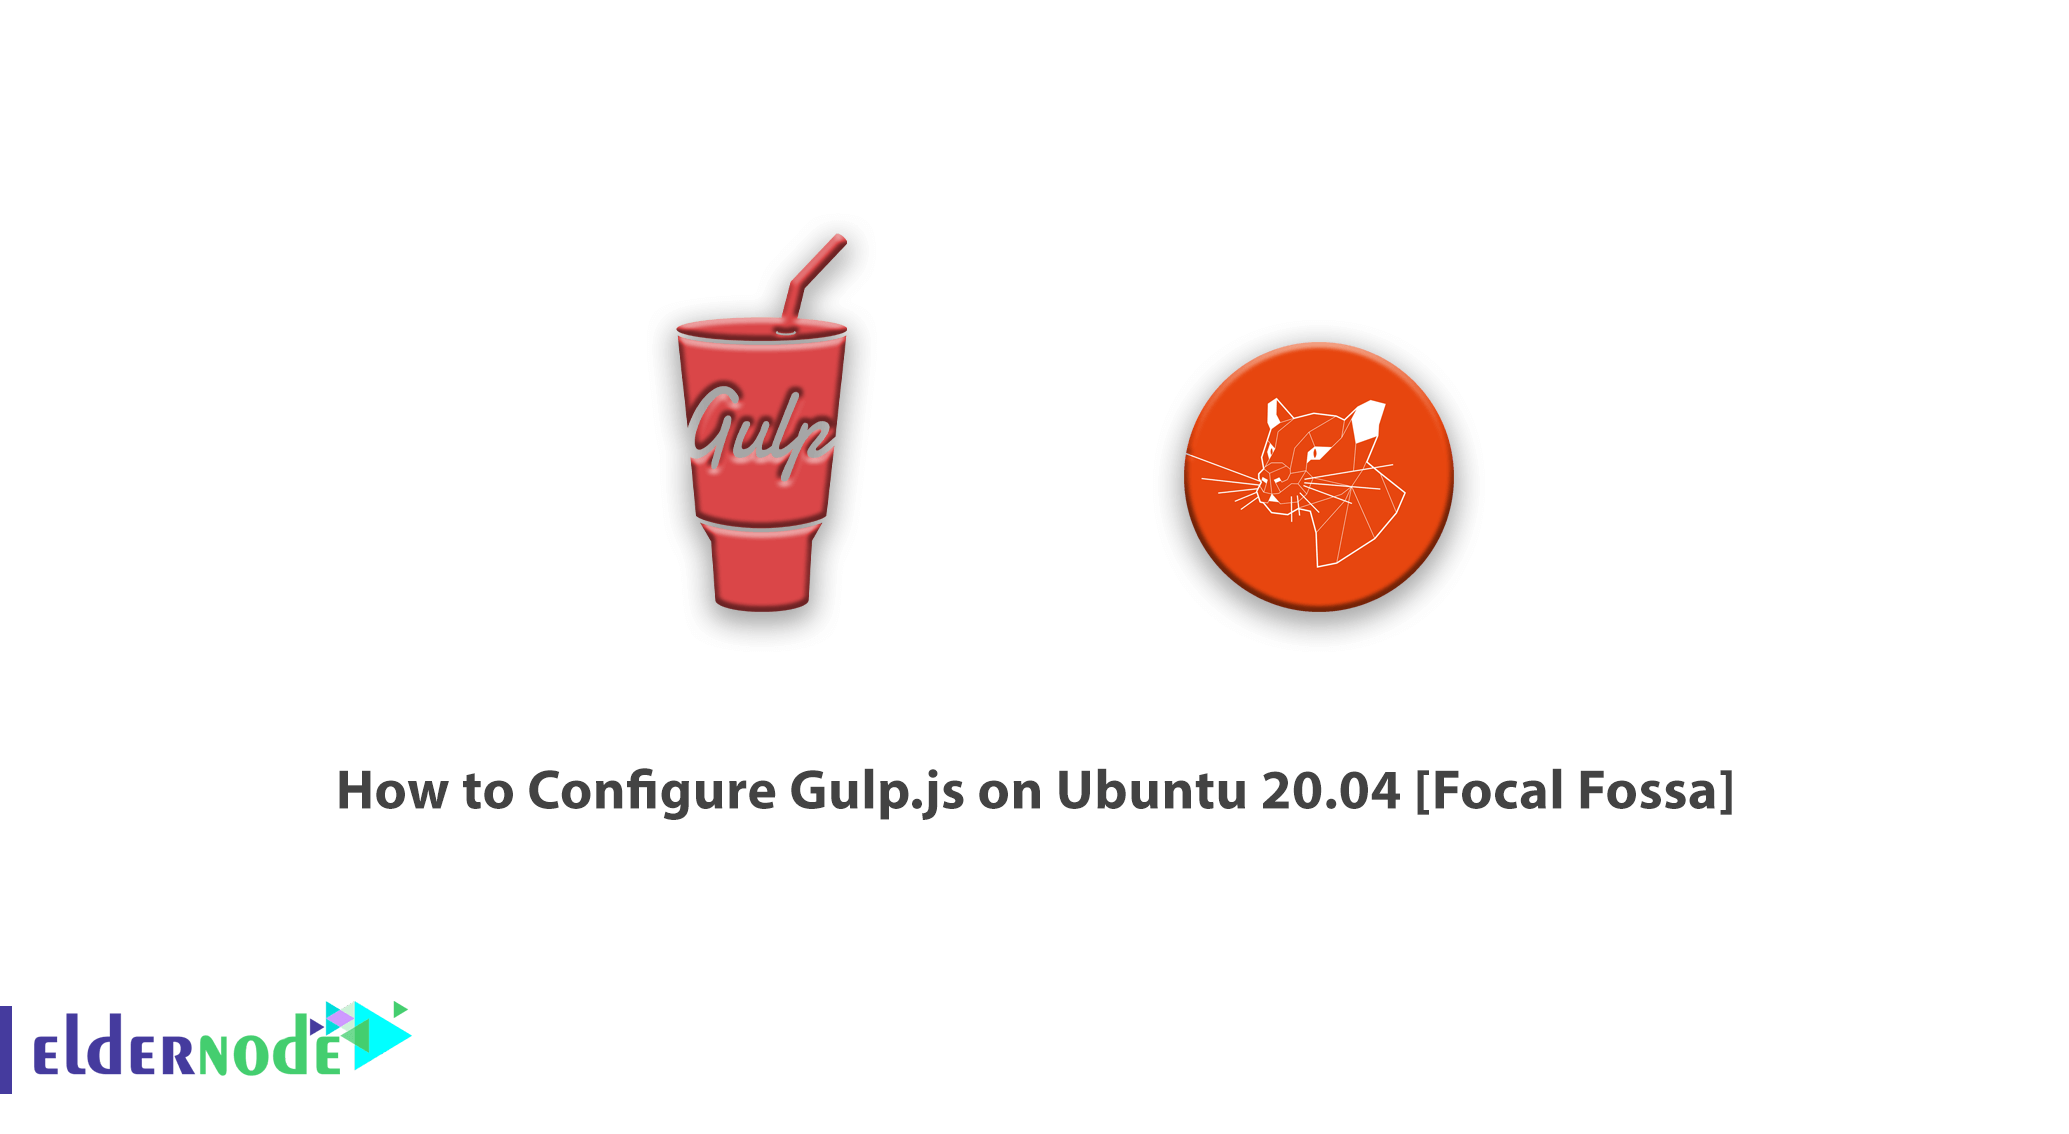 How to Configure Gulp.js on Ubuntu 20.04 [Focal Fossa]